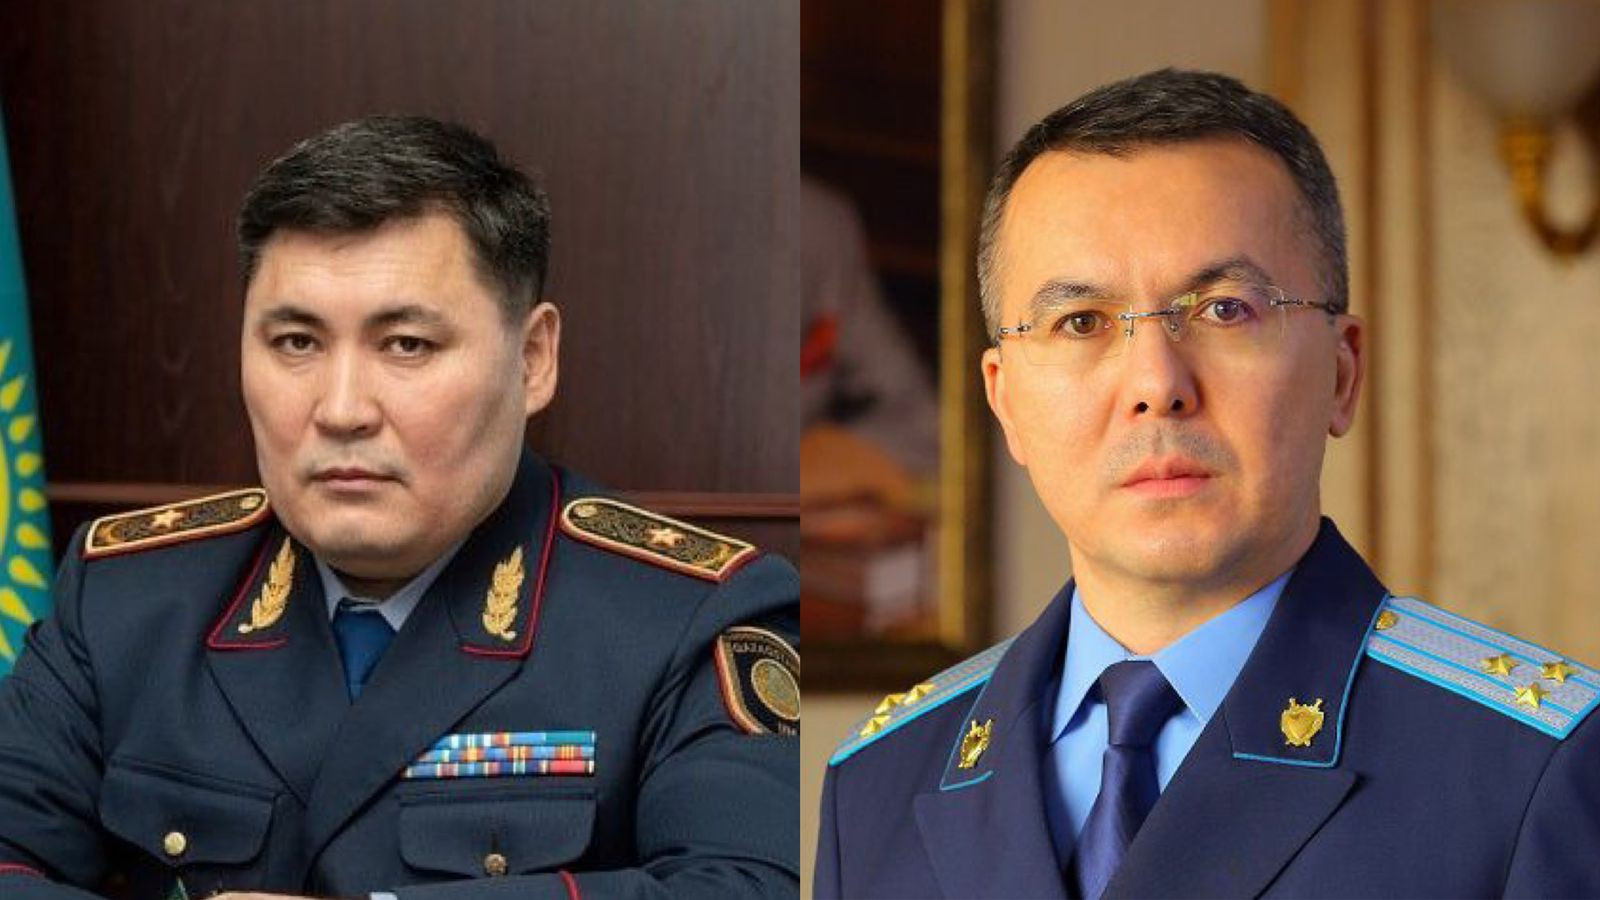  Официальное заявление главных полицейского и прокурора Алматы